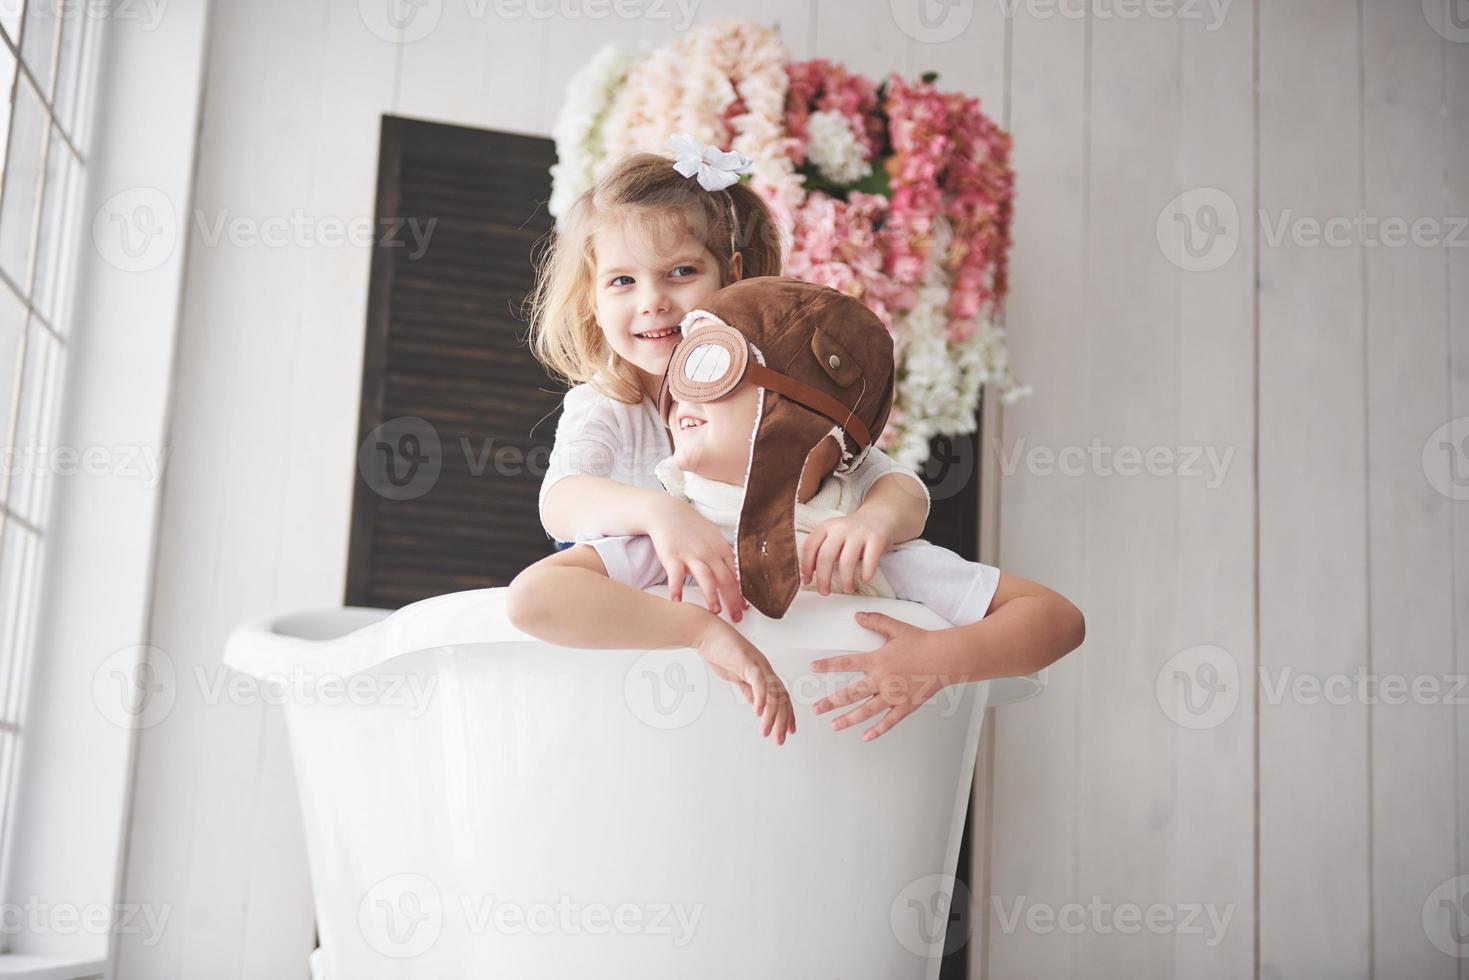 retrato de una niña y un niño con sombrero de piloto jugando en el baño a los pilotos o marineros. el concepto de viaje, infancia y realización de sueños foto